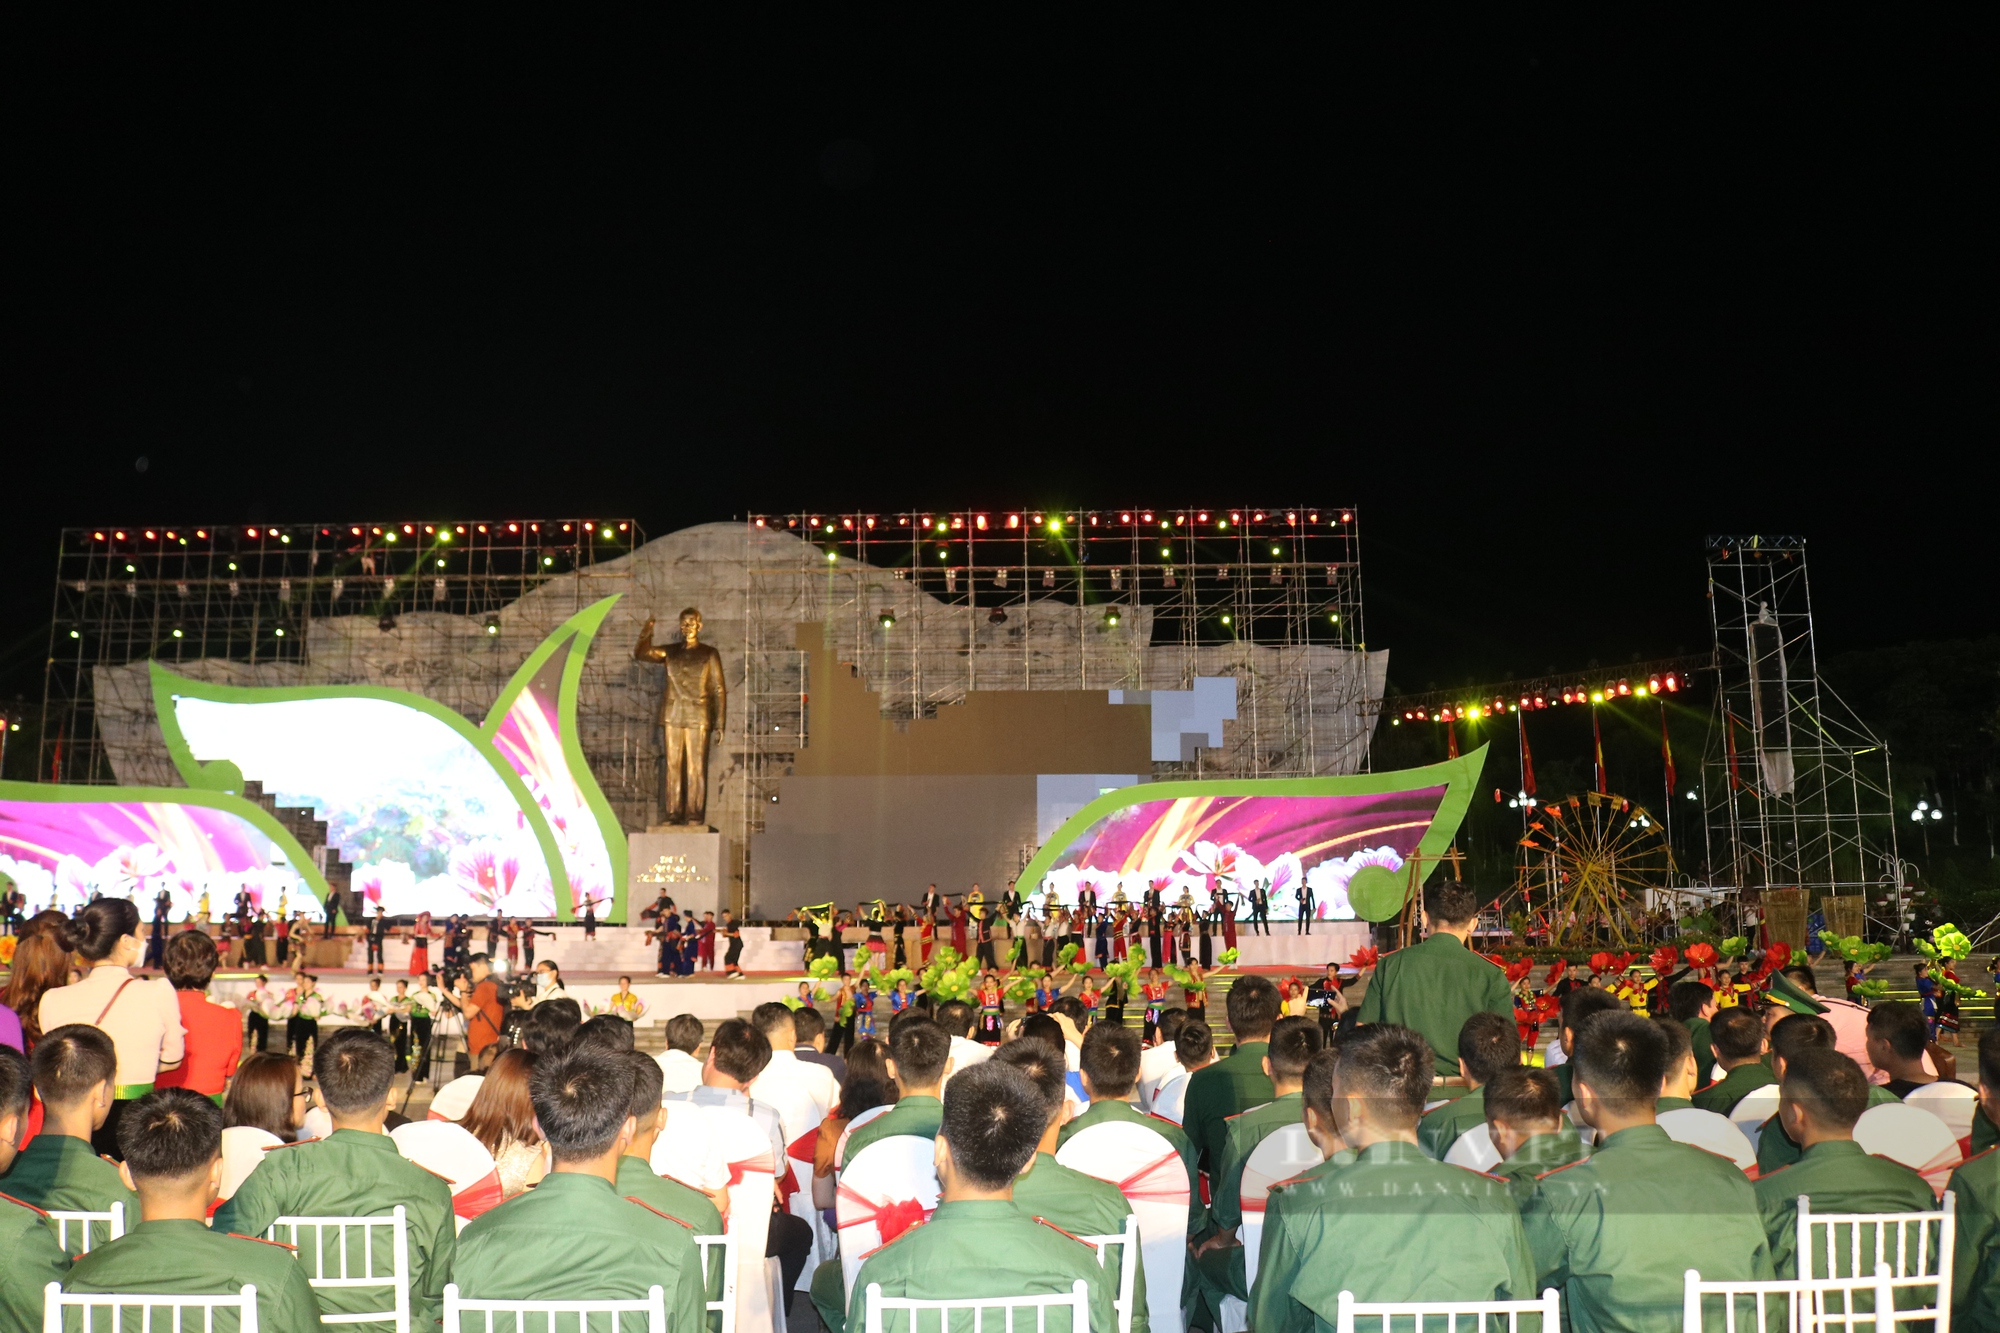 Festival trái cây, sản phẩm OCOP Việt Nam năm 2022 tại Sơn La được truyền hình trực tiếp trên VTV1 Đài truyền hình Việt Nam - Ảnh 2.